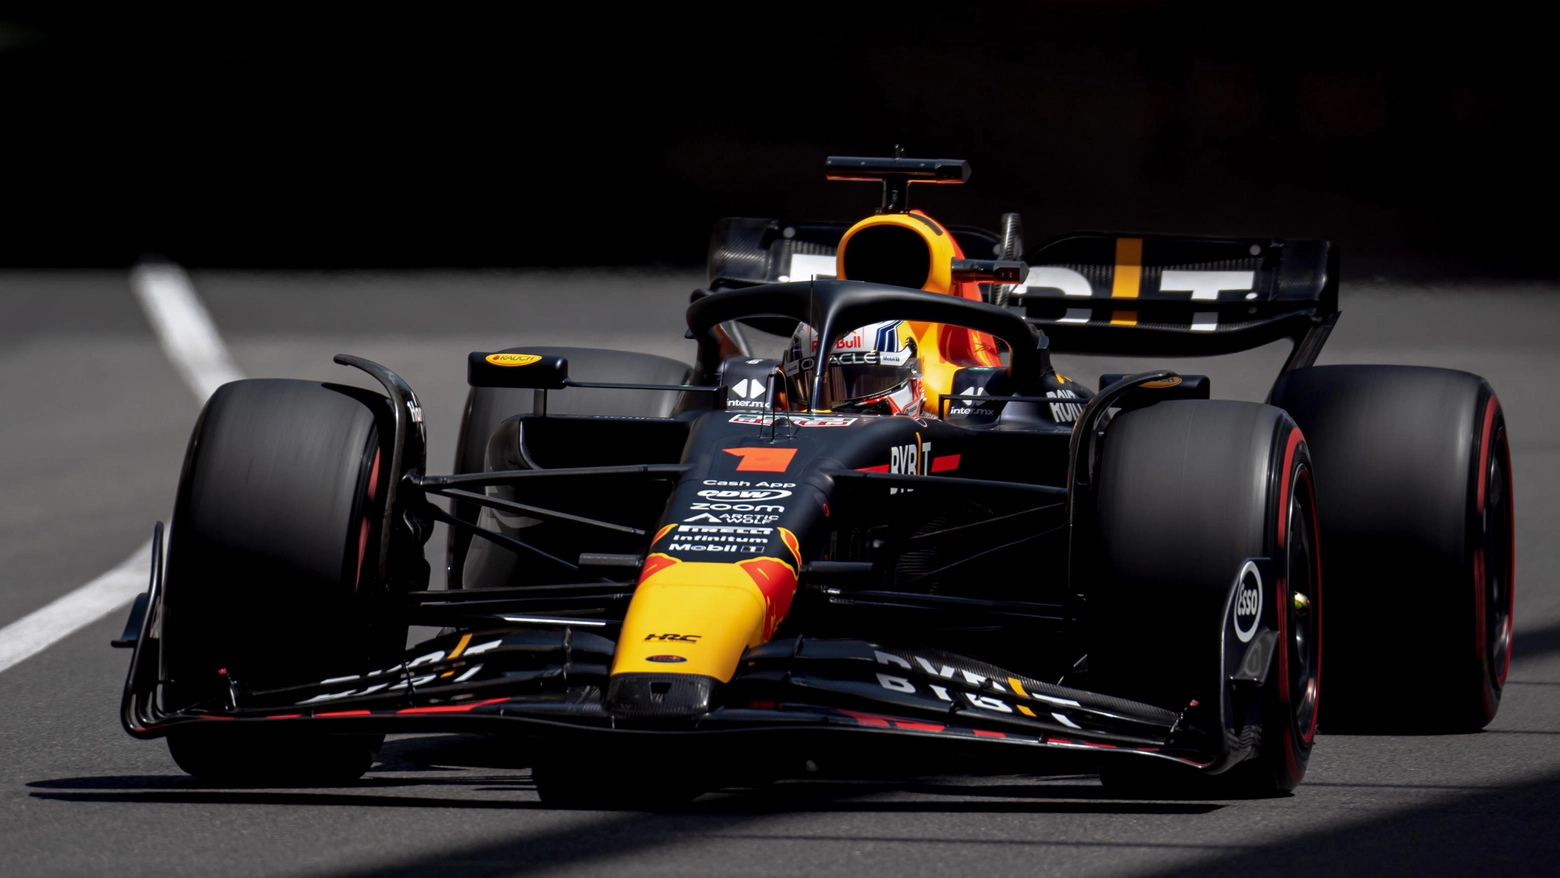 F1, Gp di Monaco: Verstappen in pole position. Leclerc penalizzato: partirà sesto. La griglia di partenza